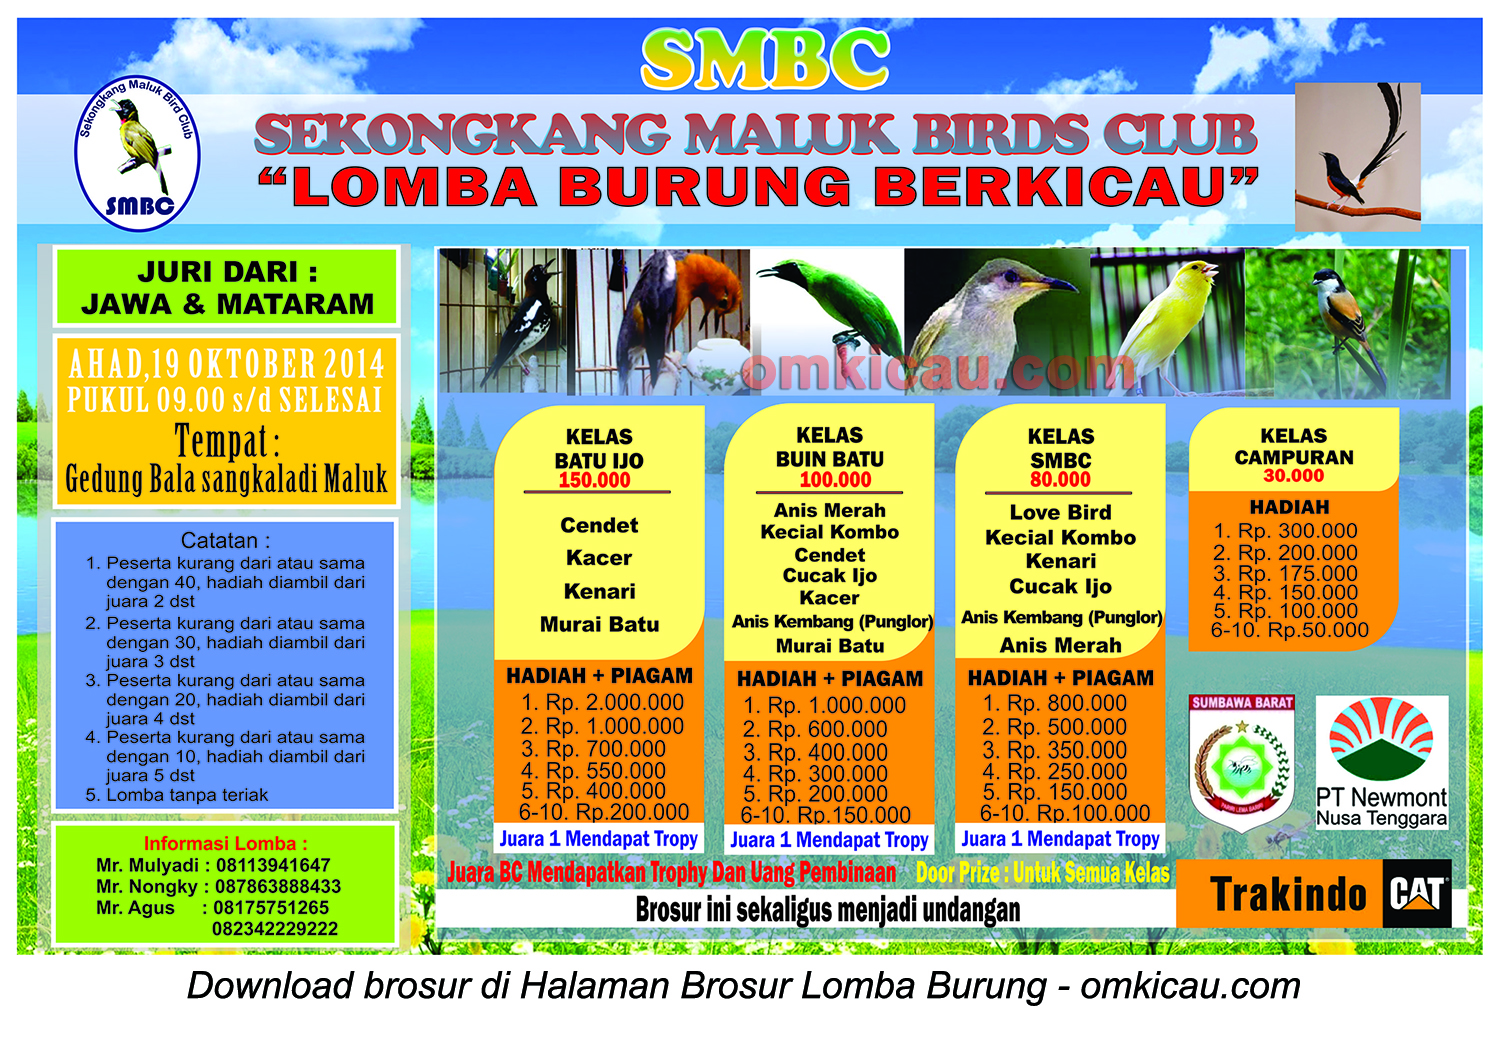 Brosur Lomba Burung Berkicau SMBC, Sumbawa Barat, 19 Oktober 2014